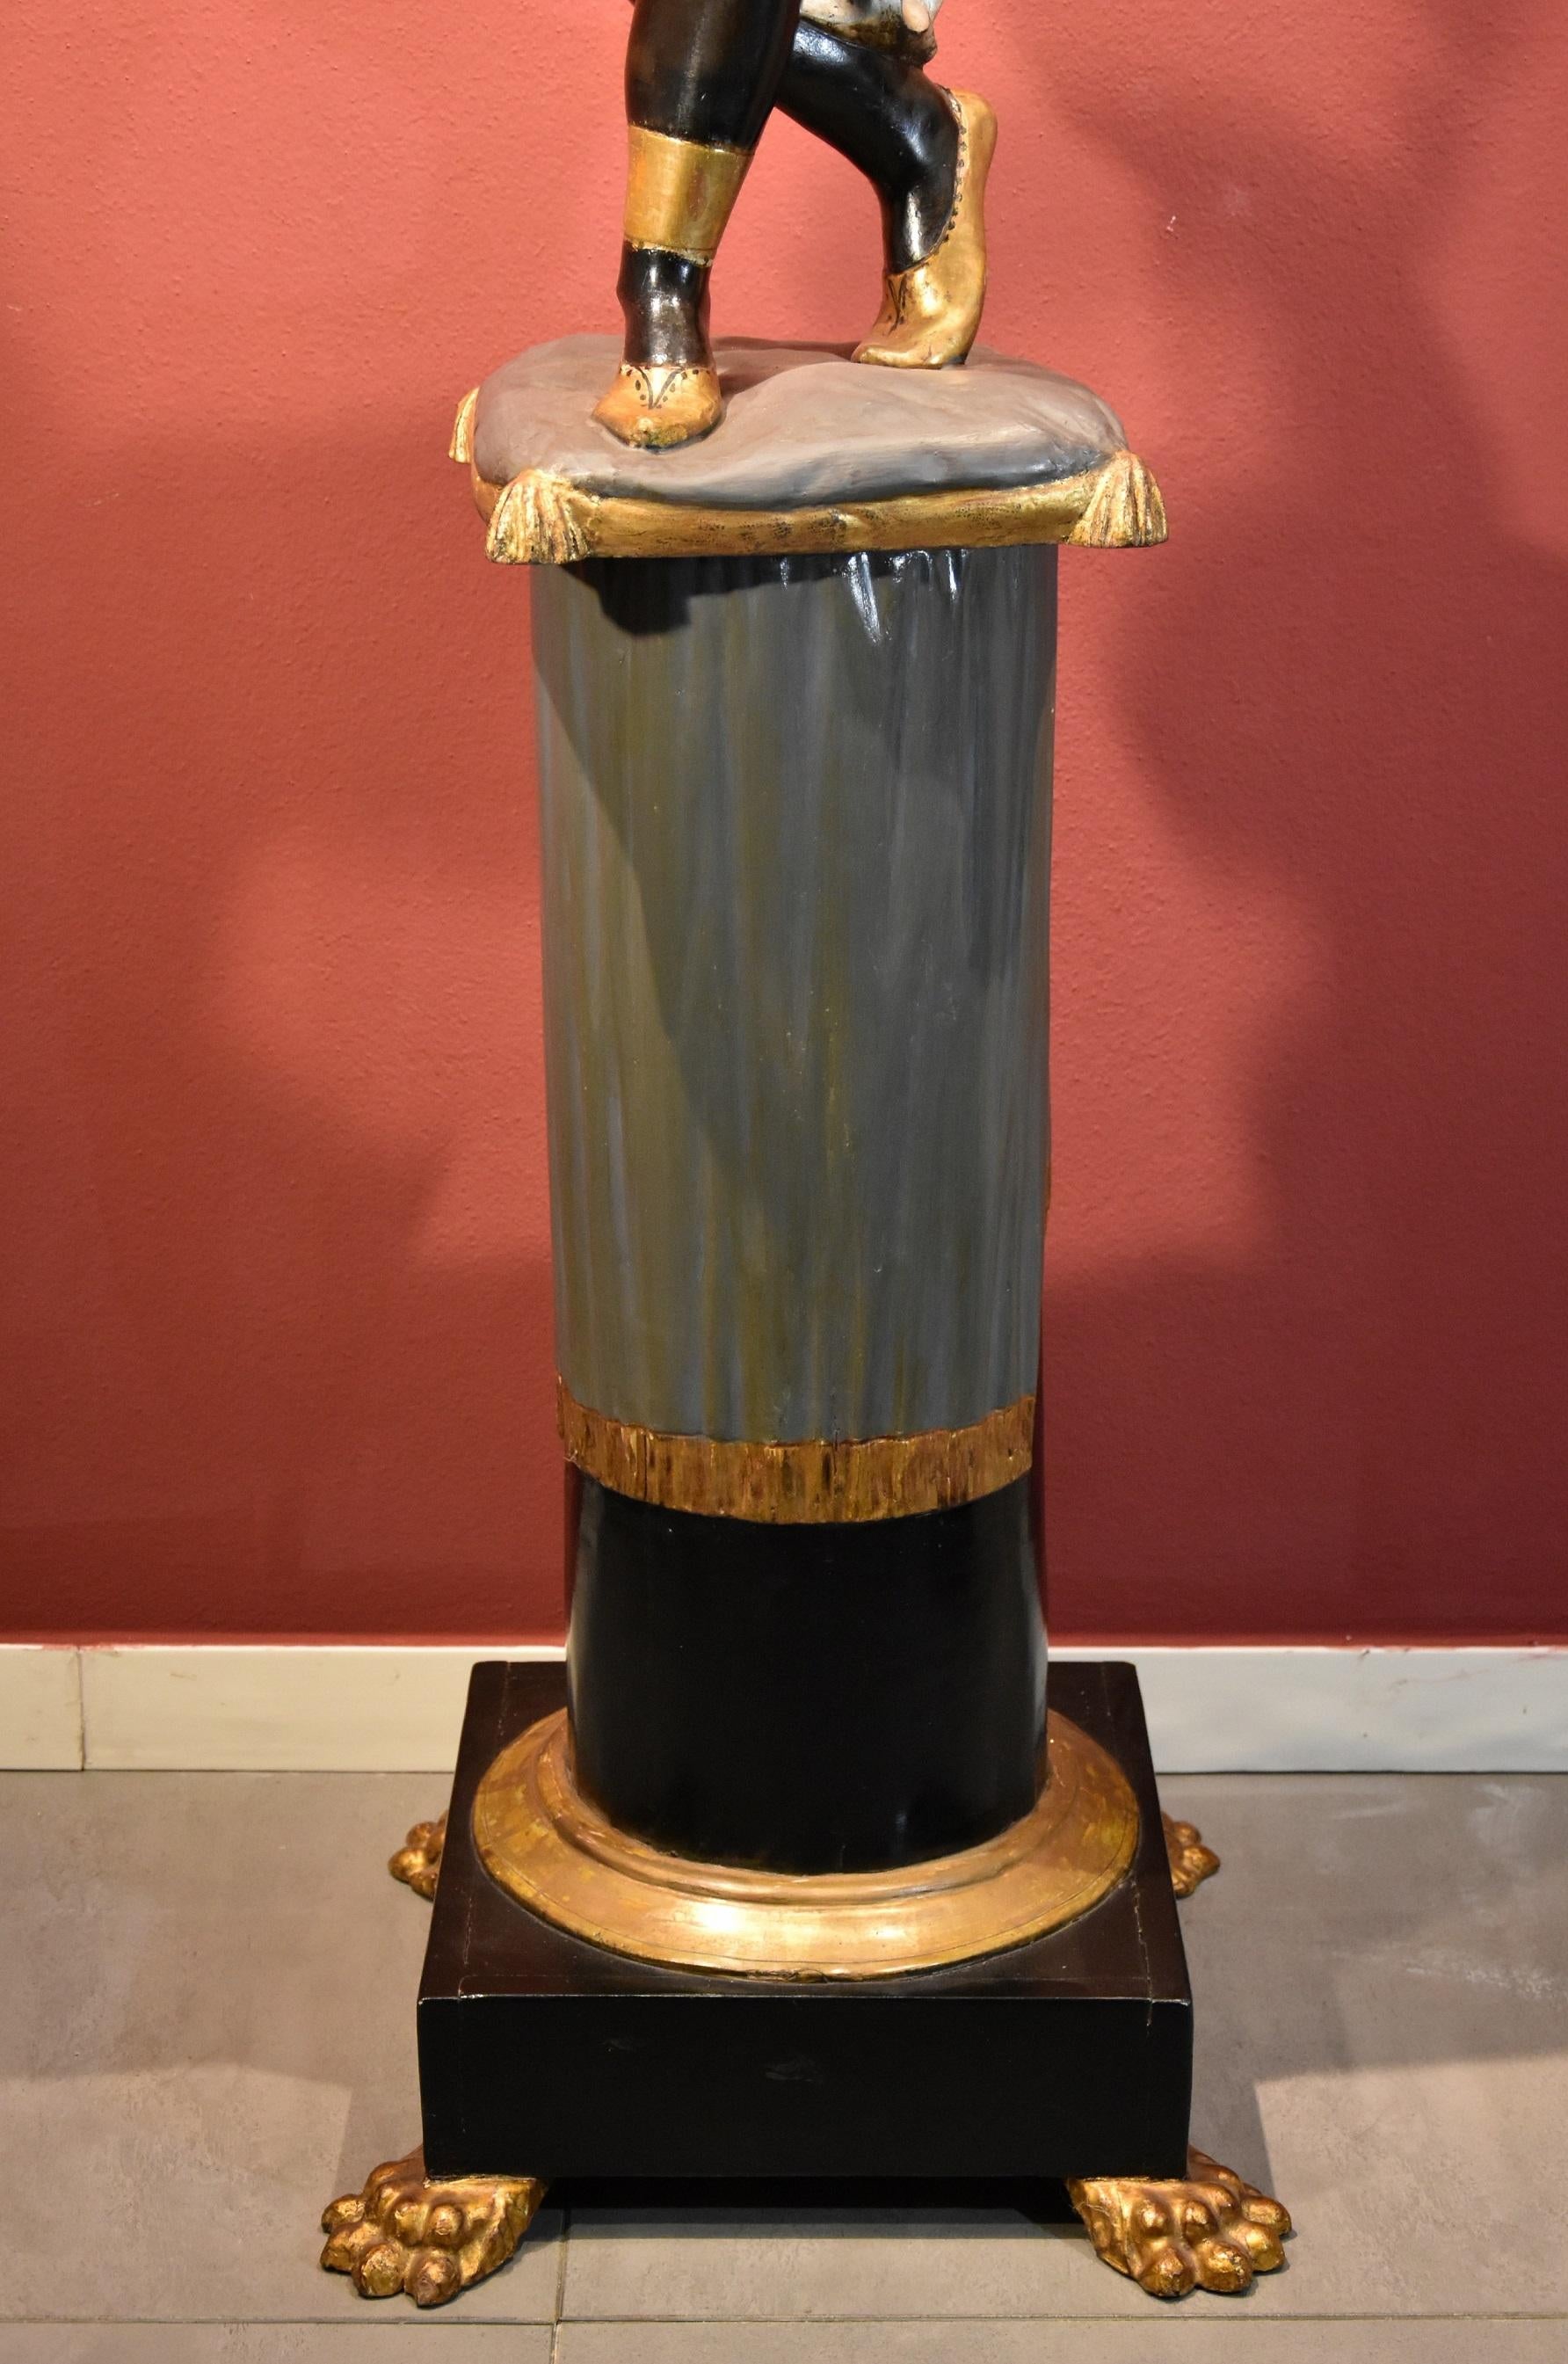 Sculpture ancienne d'une femme maure avec une corne d'abondance fleurie
Venise, 19e siècle
Bois sculpté, laqué et doré/argenté

Hauteur totale 202 cm (base de la colonne 82 cm, figure 120 cm)

Il s'agit d'une sculpture qualitative en bois